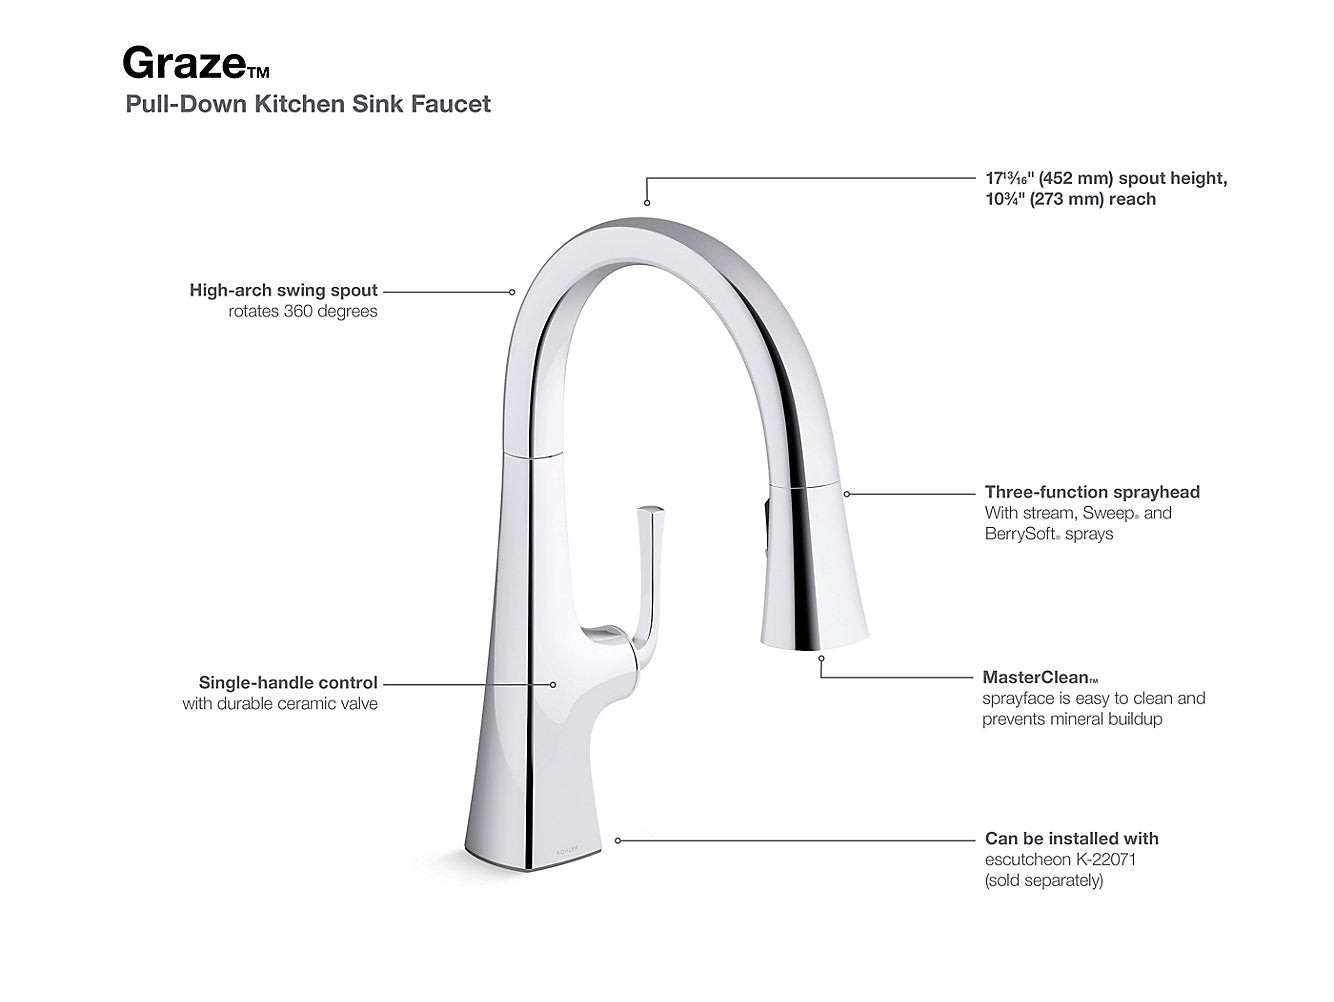 Kohler Graze Pull Down Kitchen Sink Faucet With Three Function Sprayhead - Matte Black